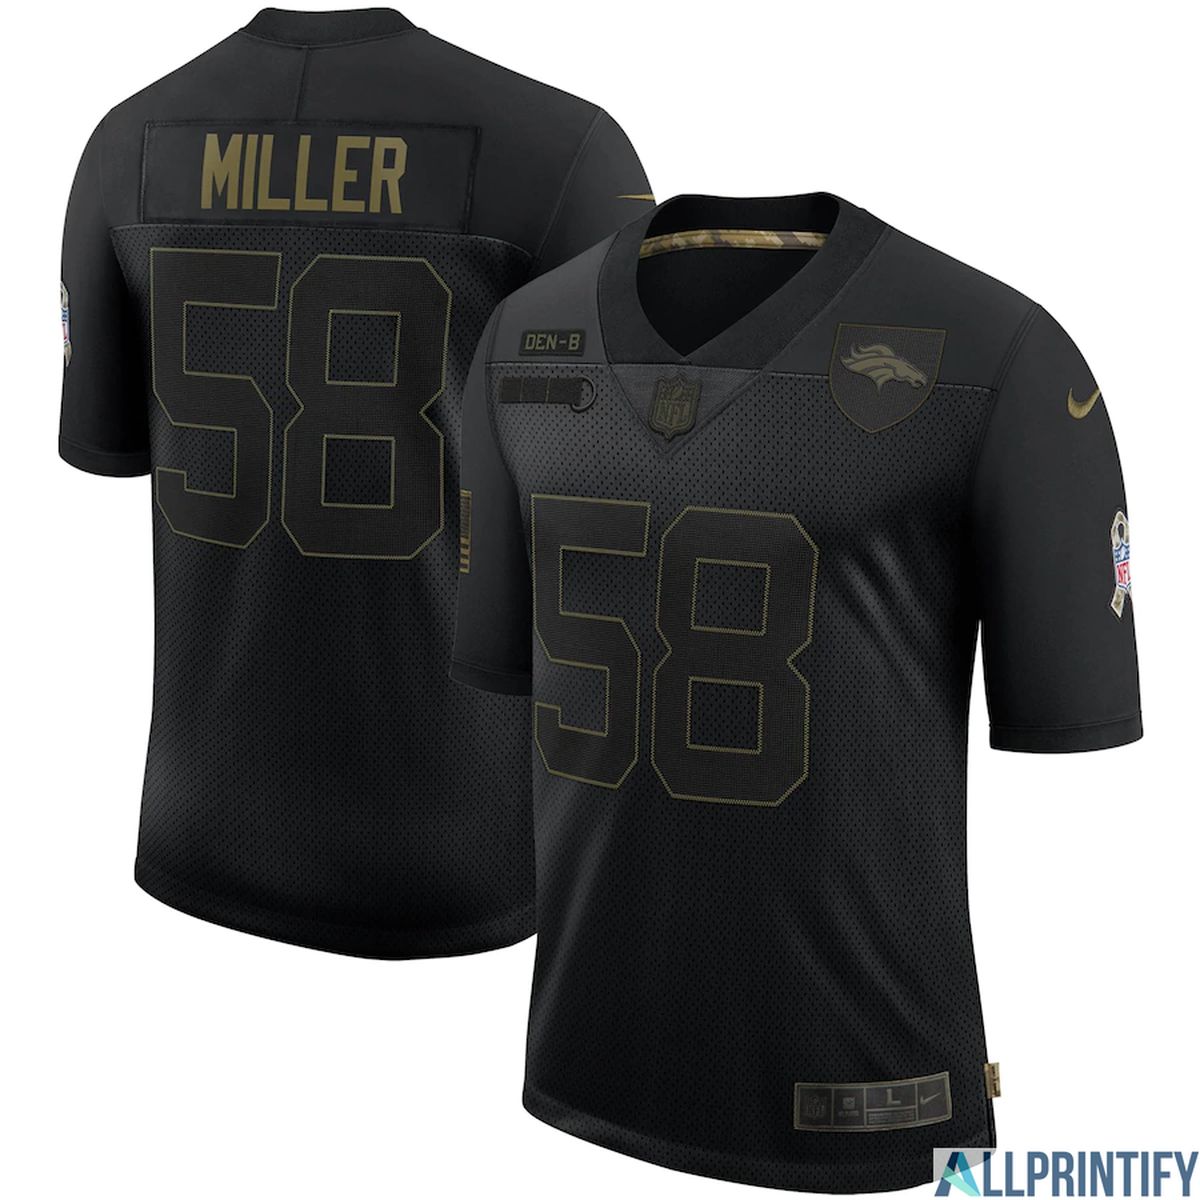 Von Miller Denver Broncos 58 Black Vapor Limited Jersey